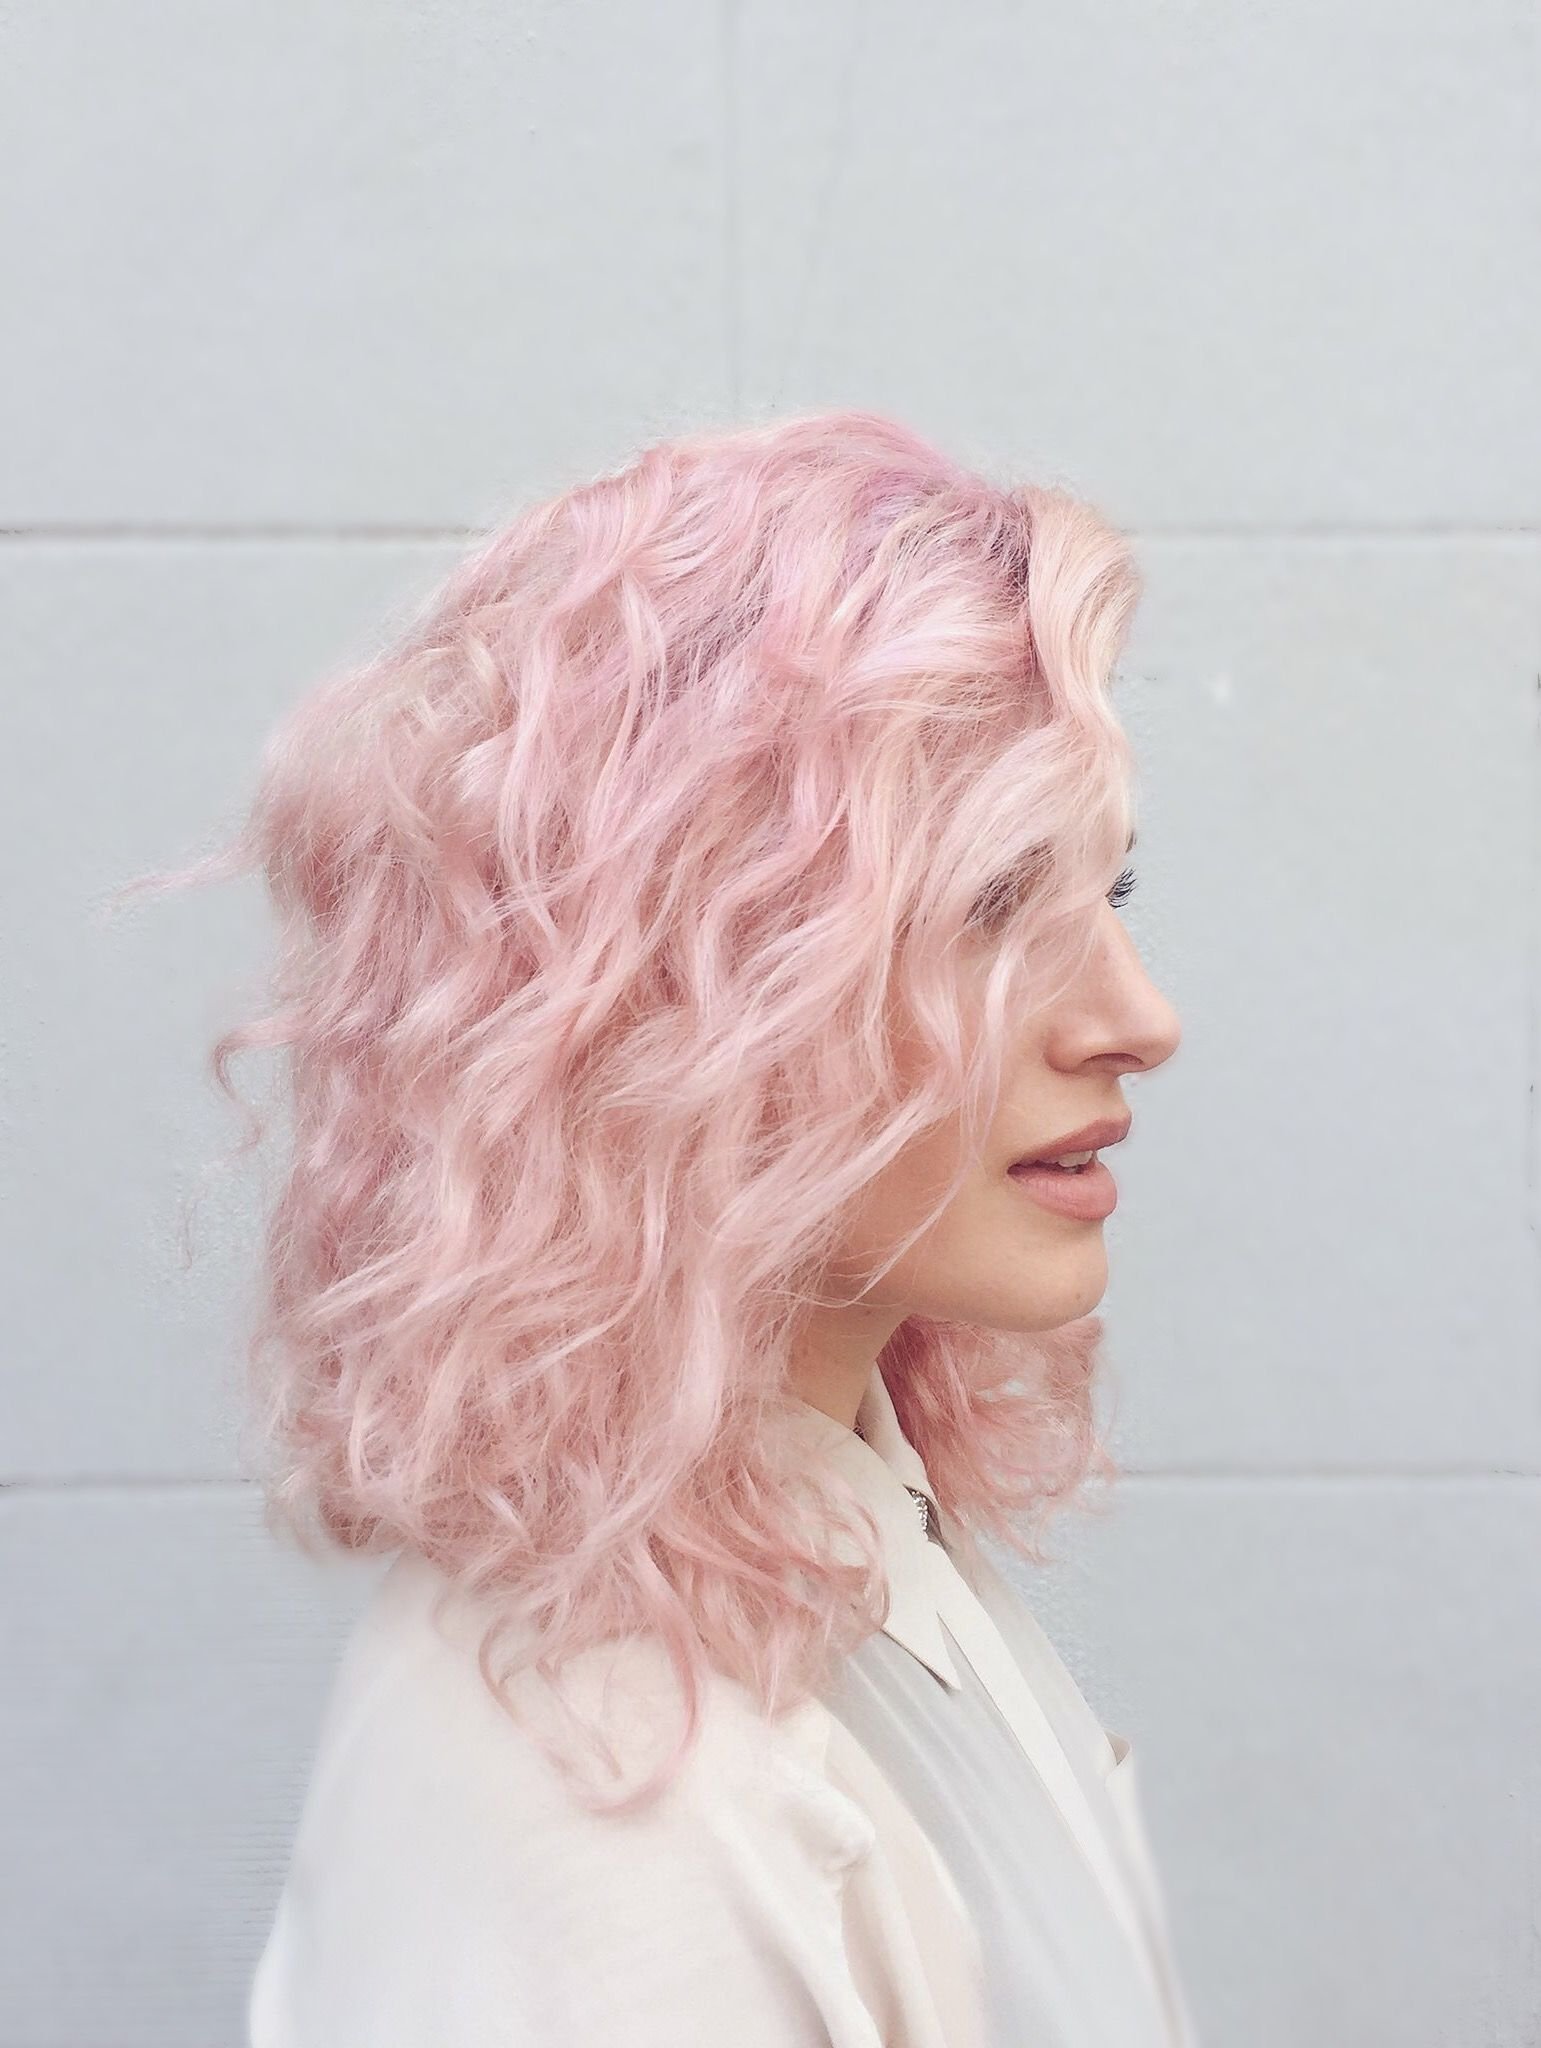 Бледно розовые волосы. Светло розовые волосы. Свет волос светло розовый. Светло розовый цвет ыолрсф. Пастельно-розовый цвет волос.